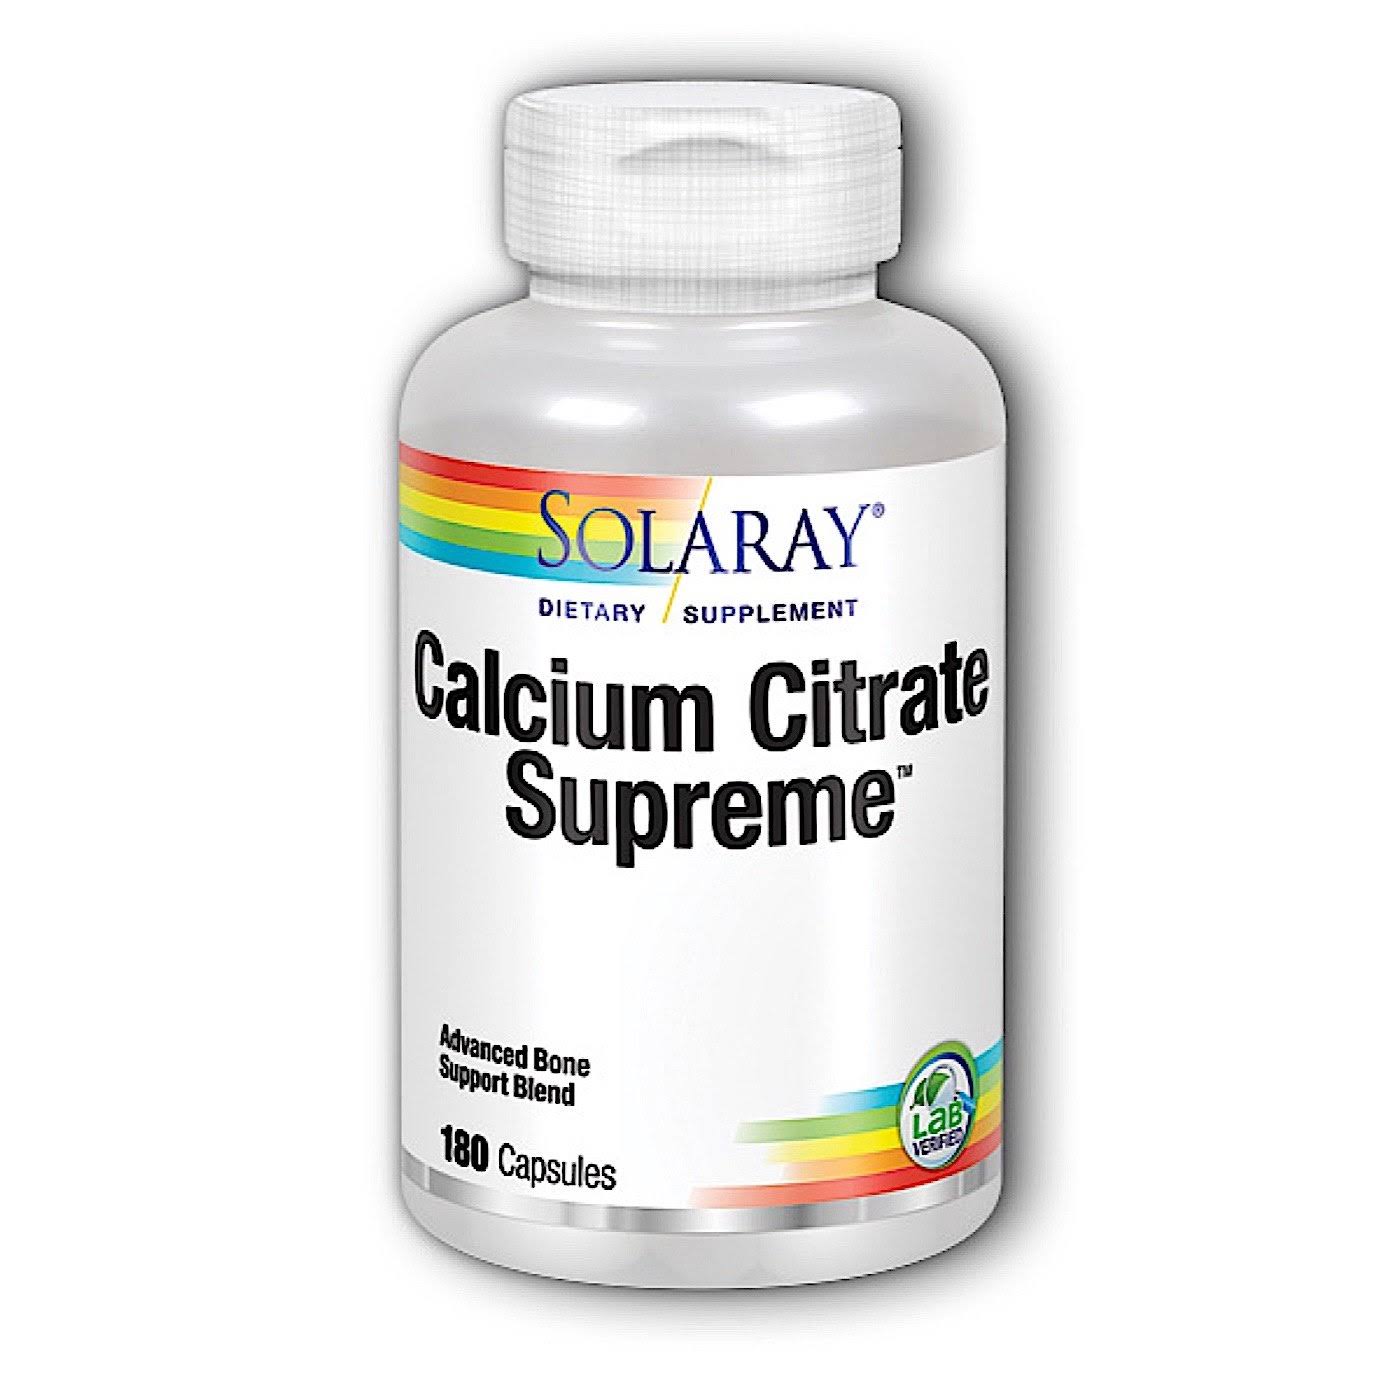 Solaray Calcium Citrate Supreme - 180 Capsules